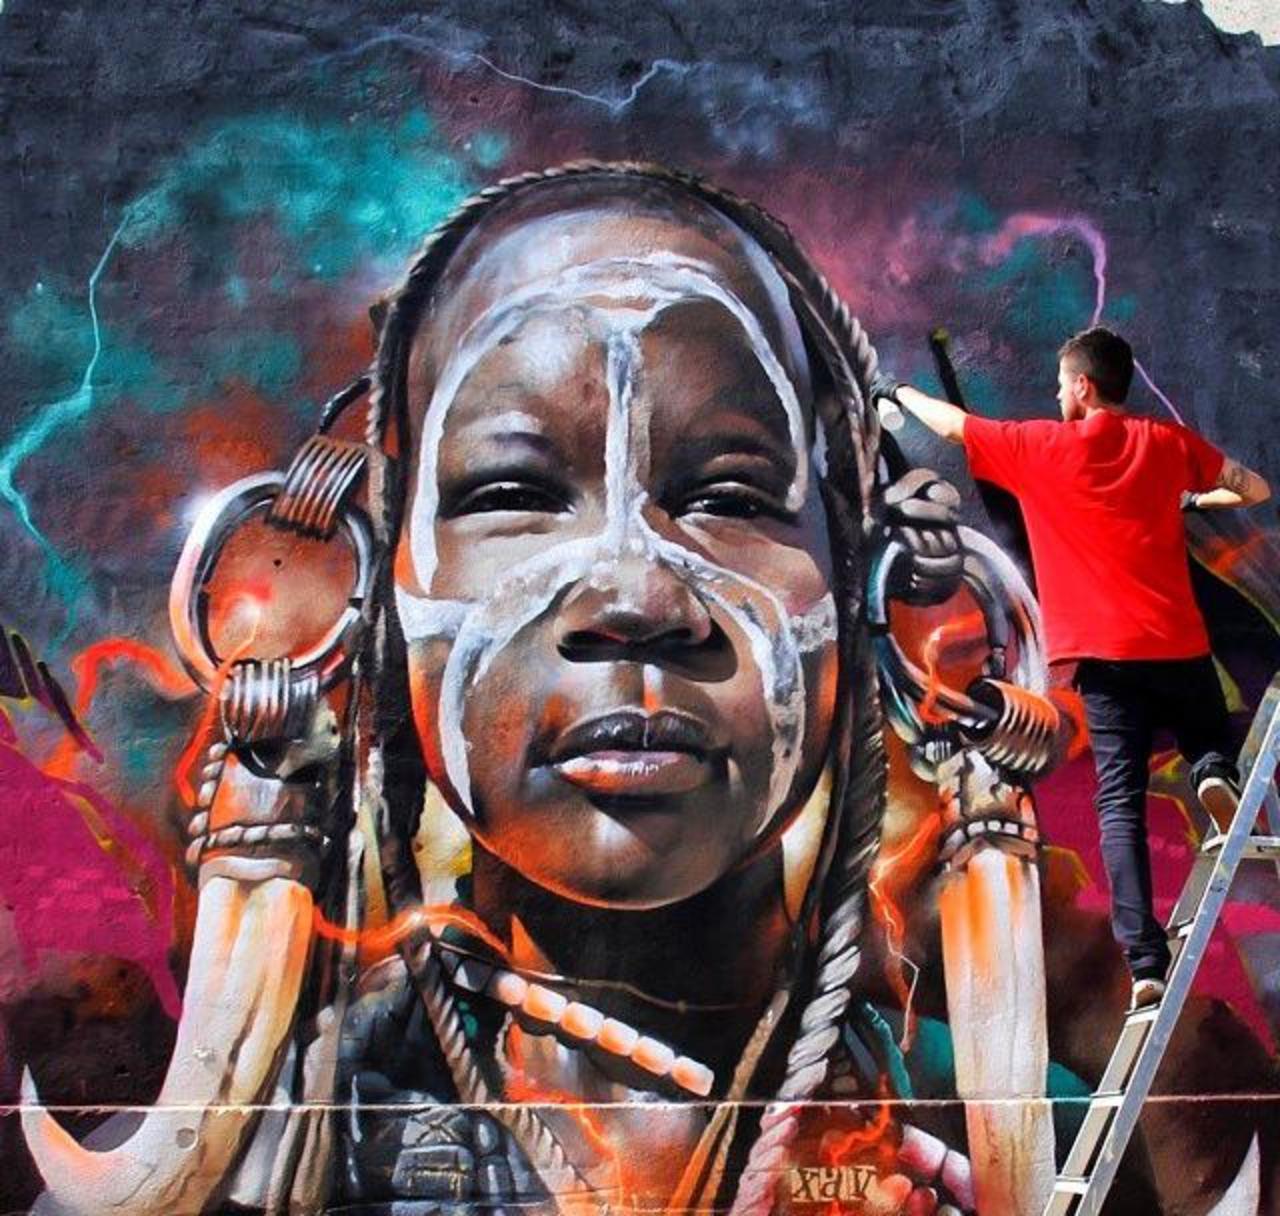 Latest Street Art by the talented - XAV  

#art #arte #graffiti #streetart http://t.co/aqVxWAxkIu